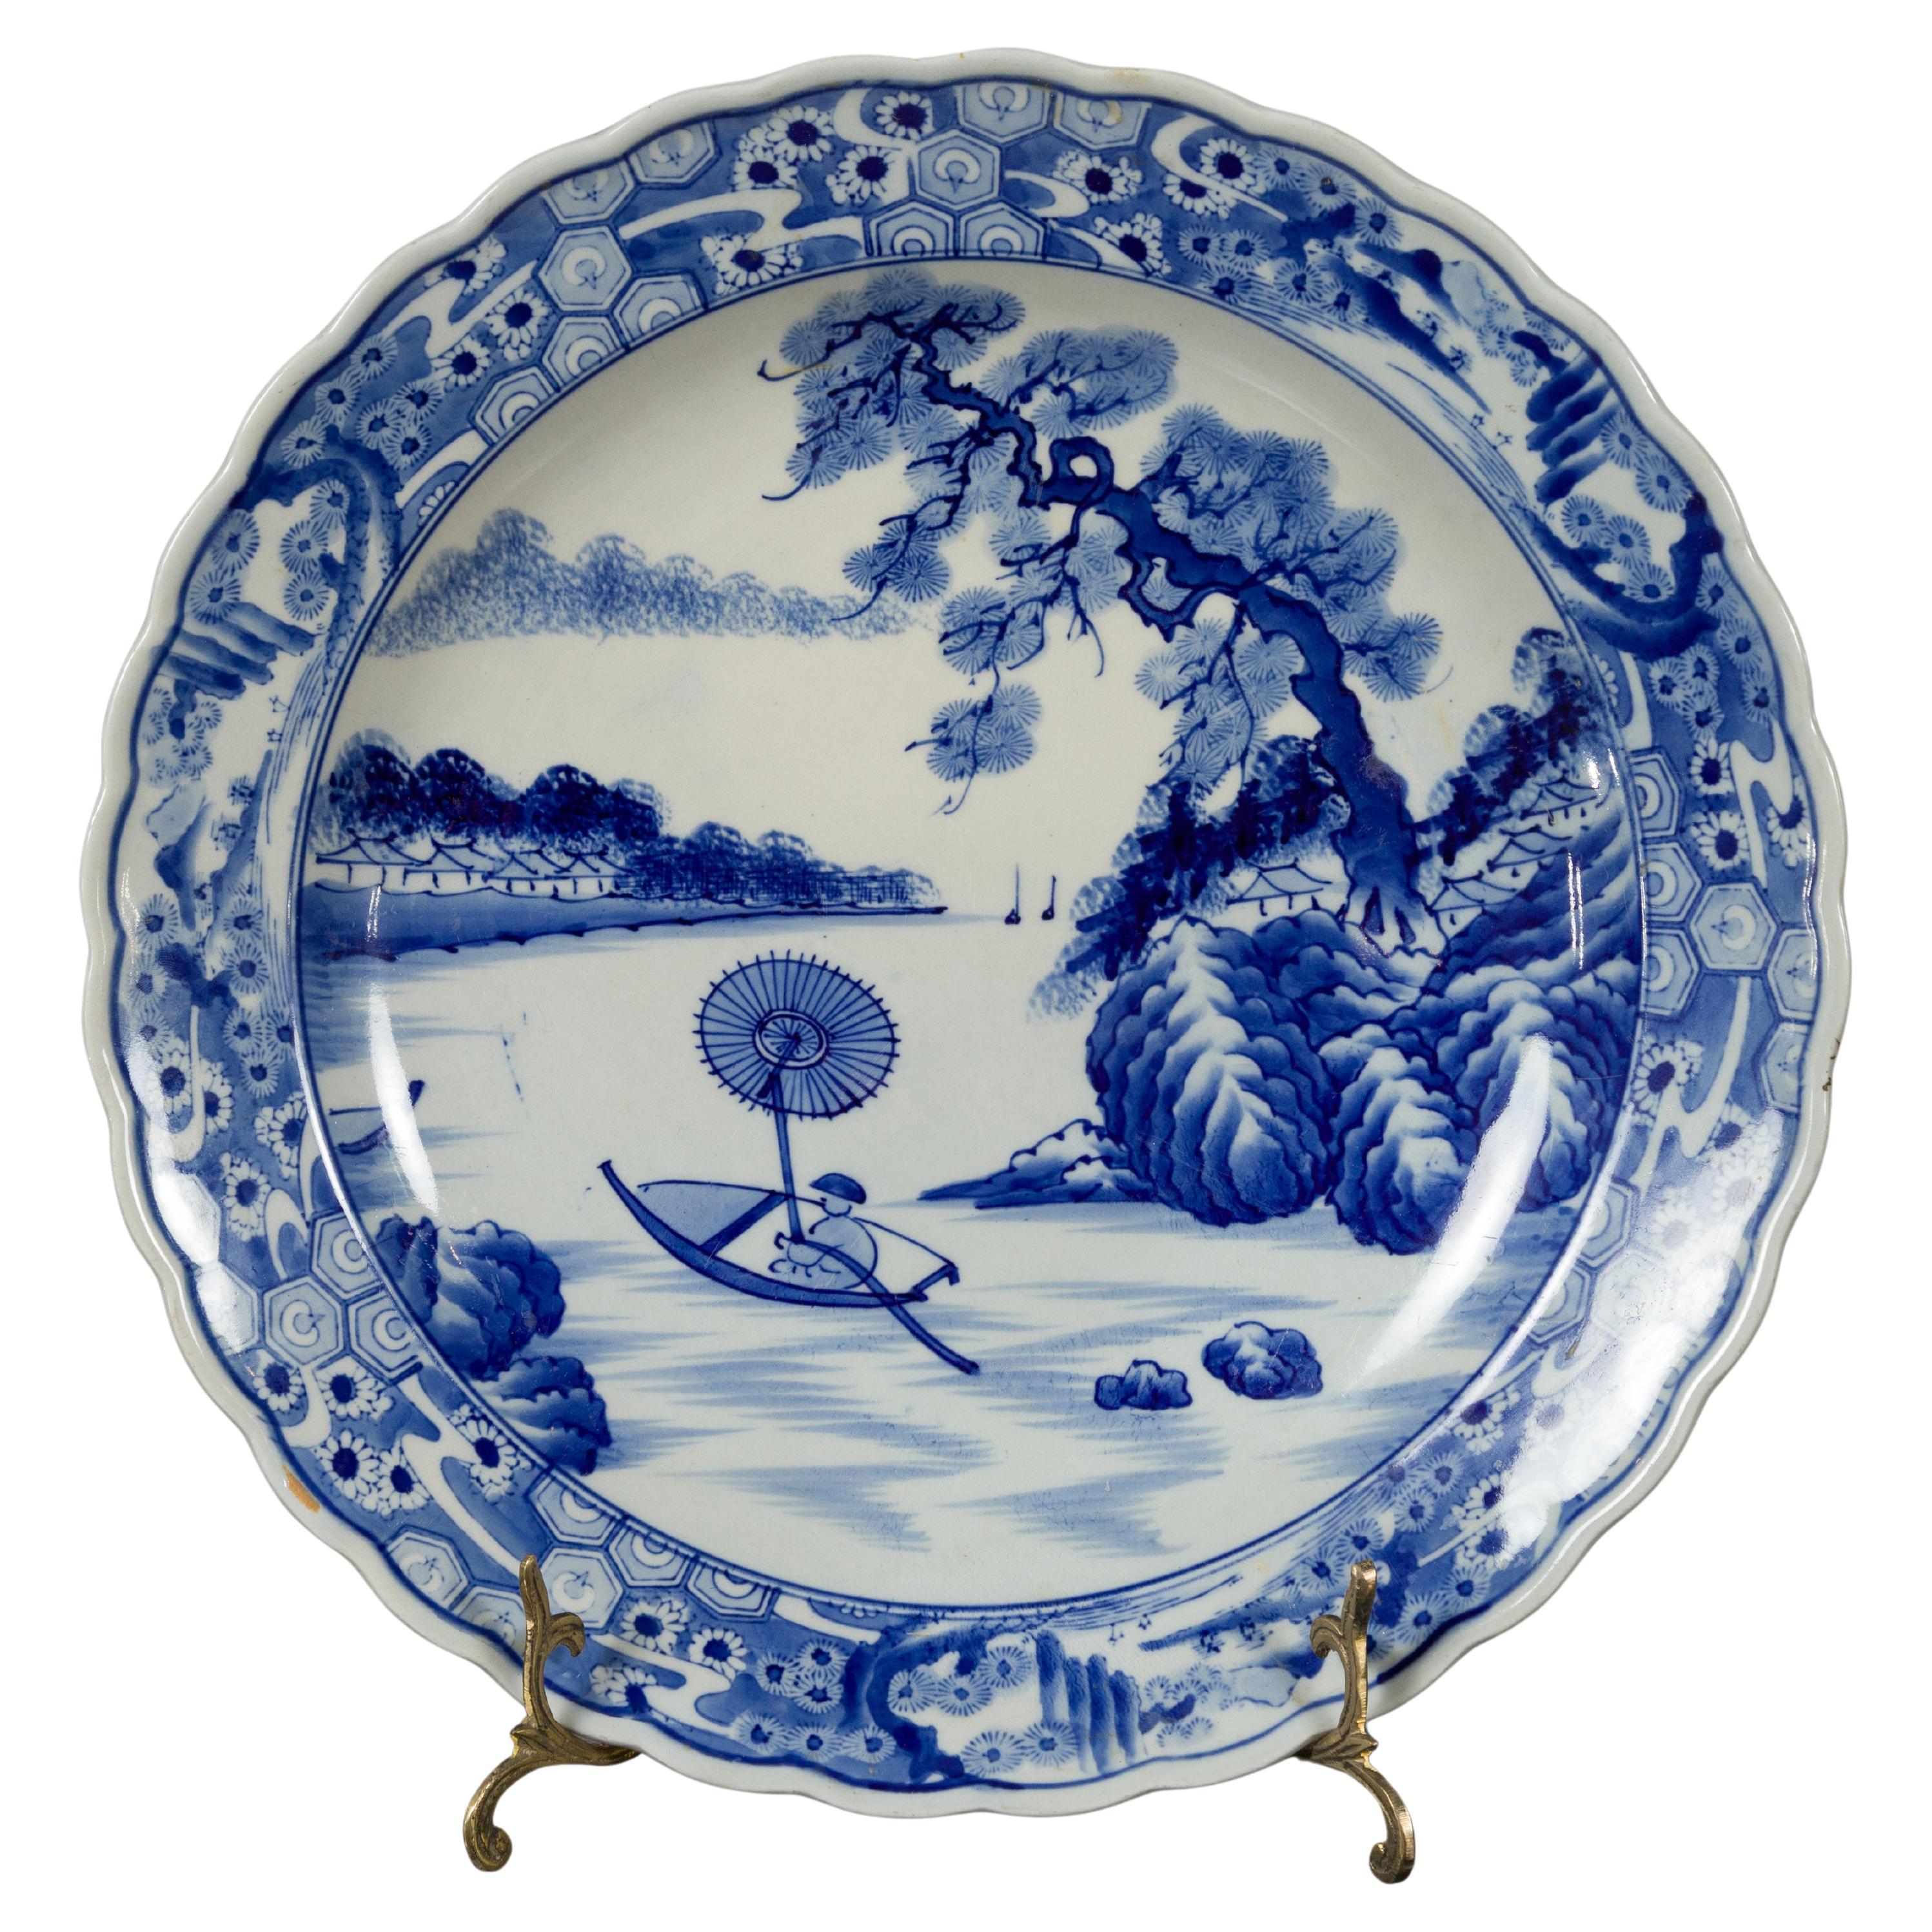 Assiette de présentation japonaise en porcelaine Imari du 19ème siècle avec décor peint en bleu et blanc